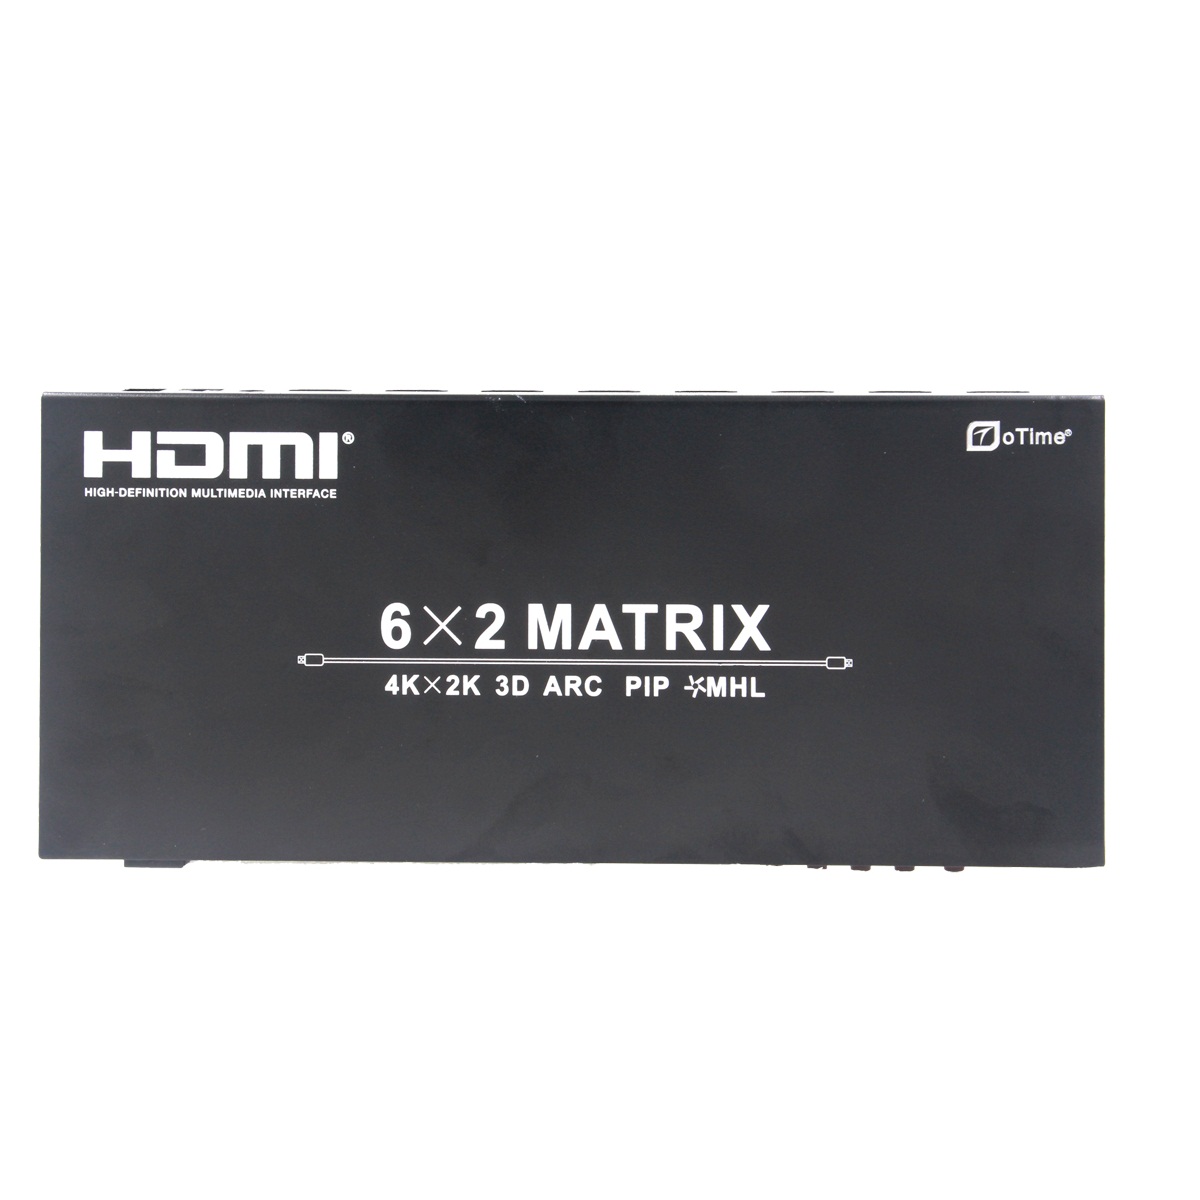 oTime OT-0962 HDMI Matrix 6*2 with ARC,MHL INPUT , IR remote control